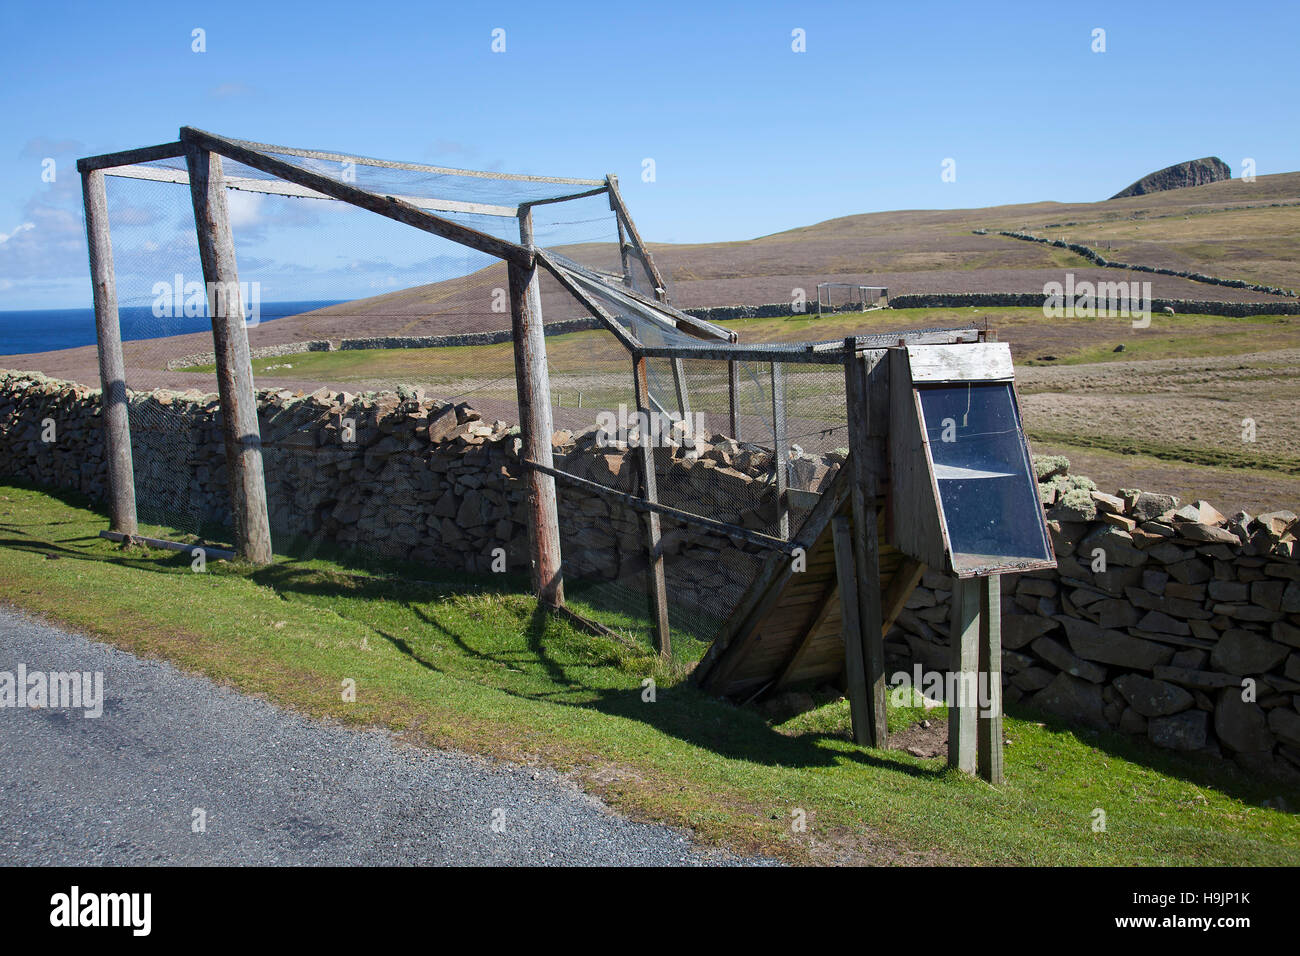 Piège Helgoland / piège entonnoir pour le piégeage des oiseaux, afin qu'ils puissent être bordés par les ornithologues sur Fair Isle, Shetland, Écosse Banque D'Images